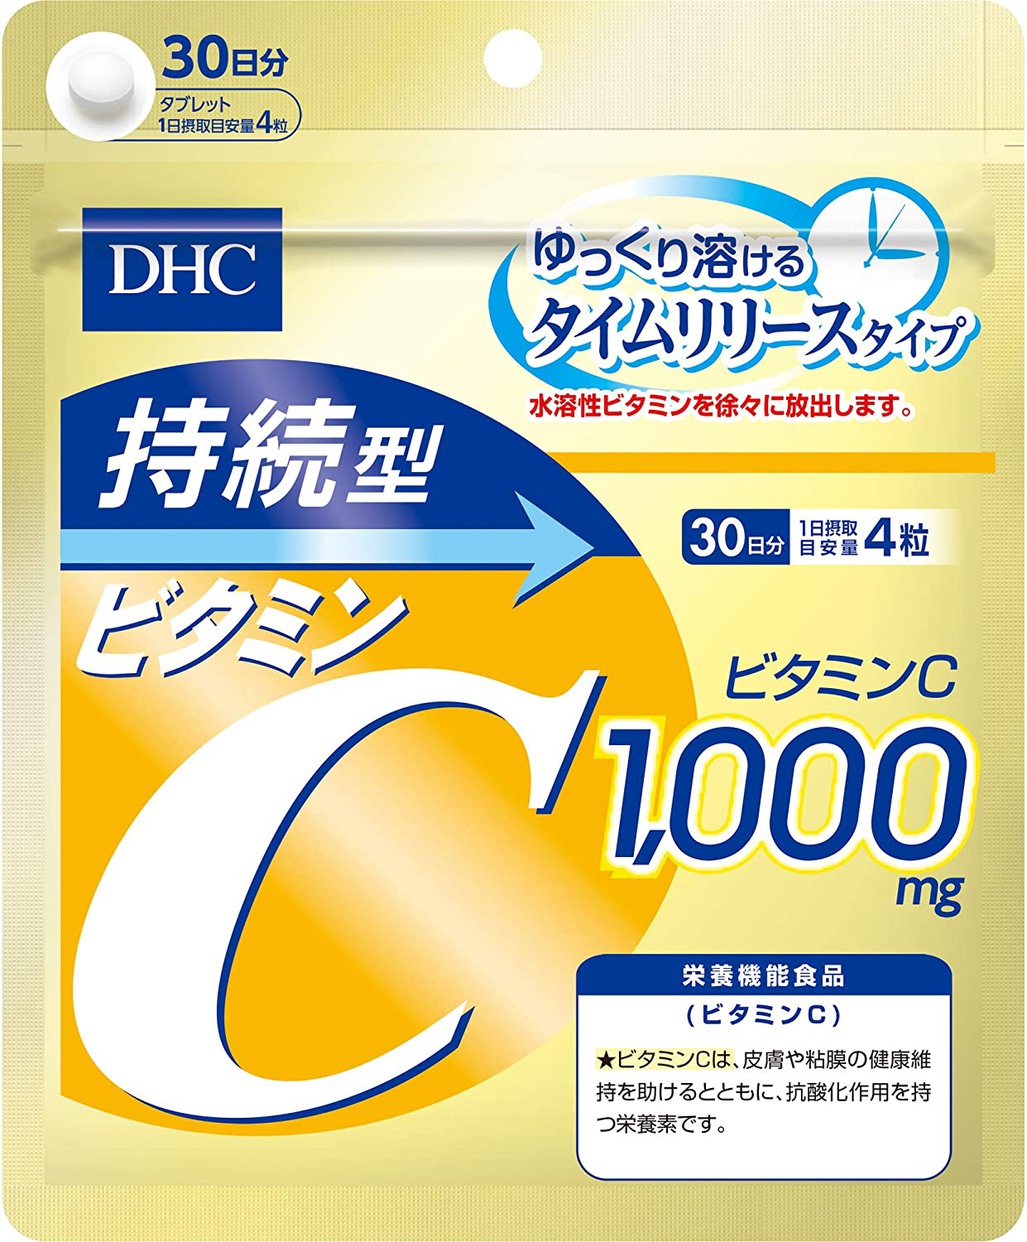 DHC(ディーエイチシー) 持続型ビタミンCの商品画像サムネ1 